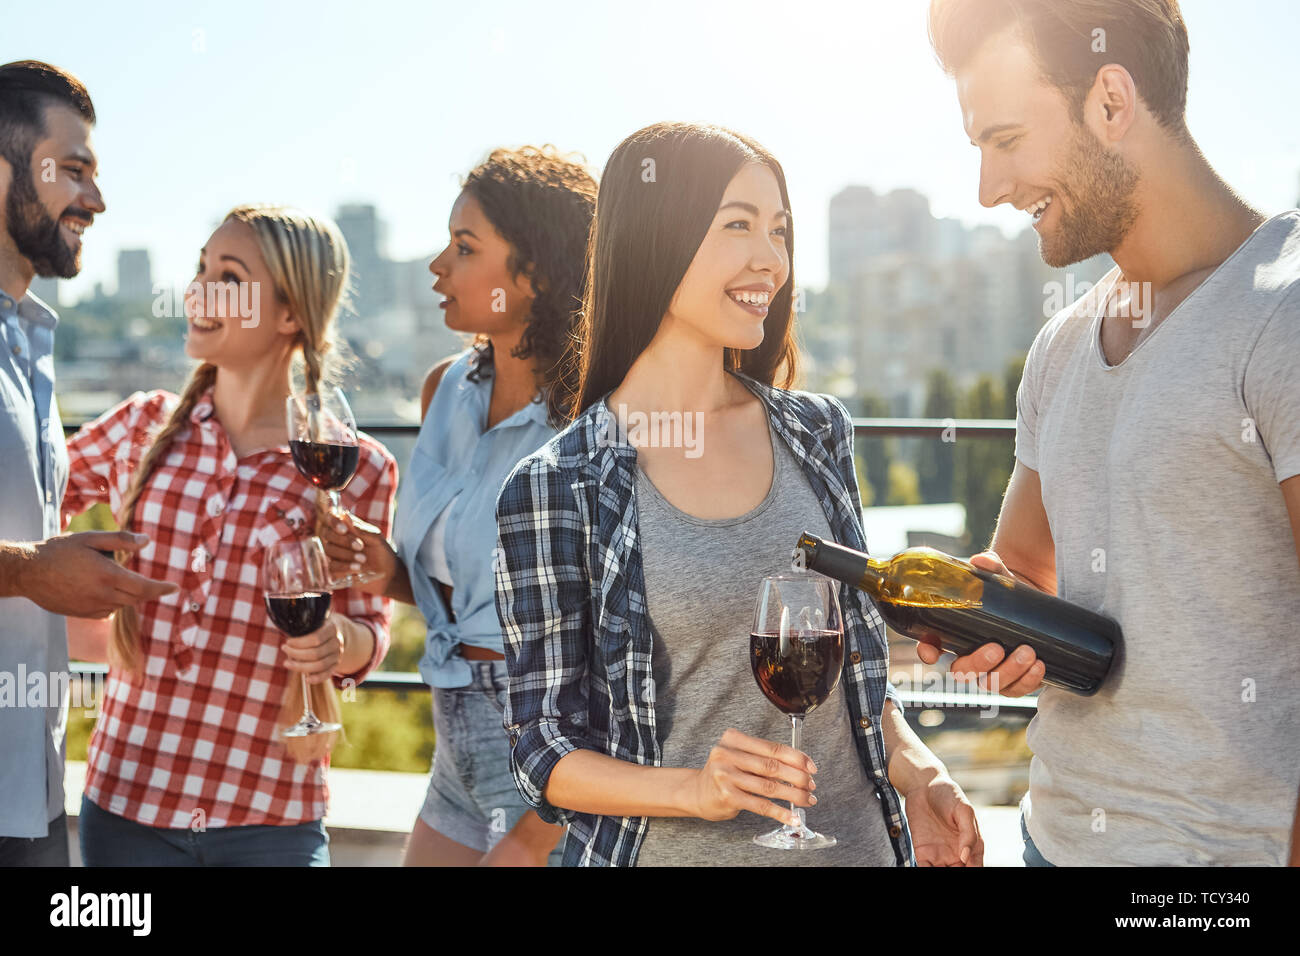 S'amusant avec des amis. Les jeunes hommes barbus est de verser le vin à son ami et souriant alors qu'il se trouvait sur le toit avec des amis. Concept de barbecue. L'été Banque D'Images